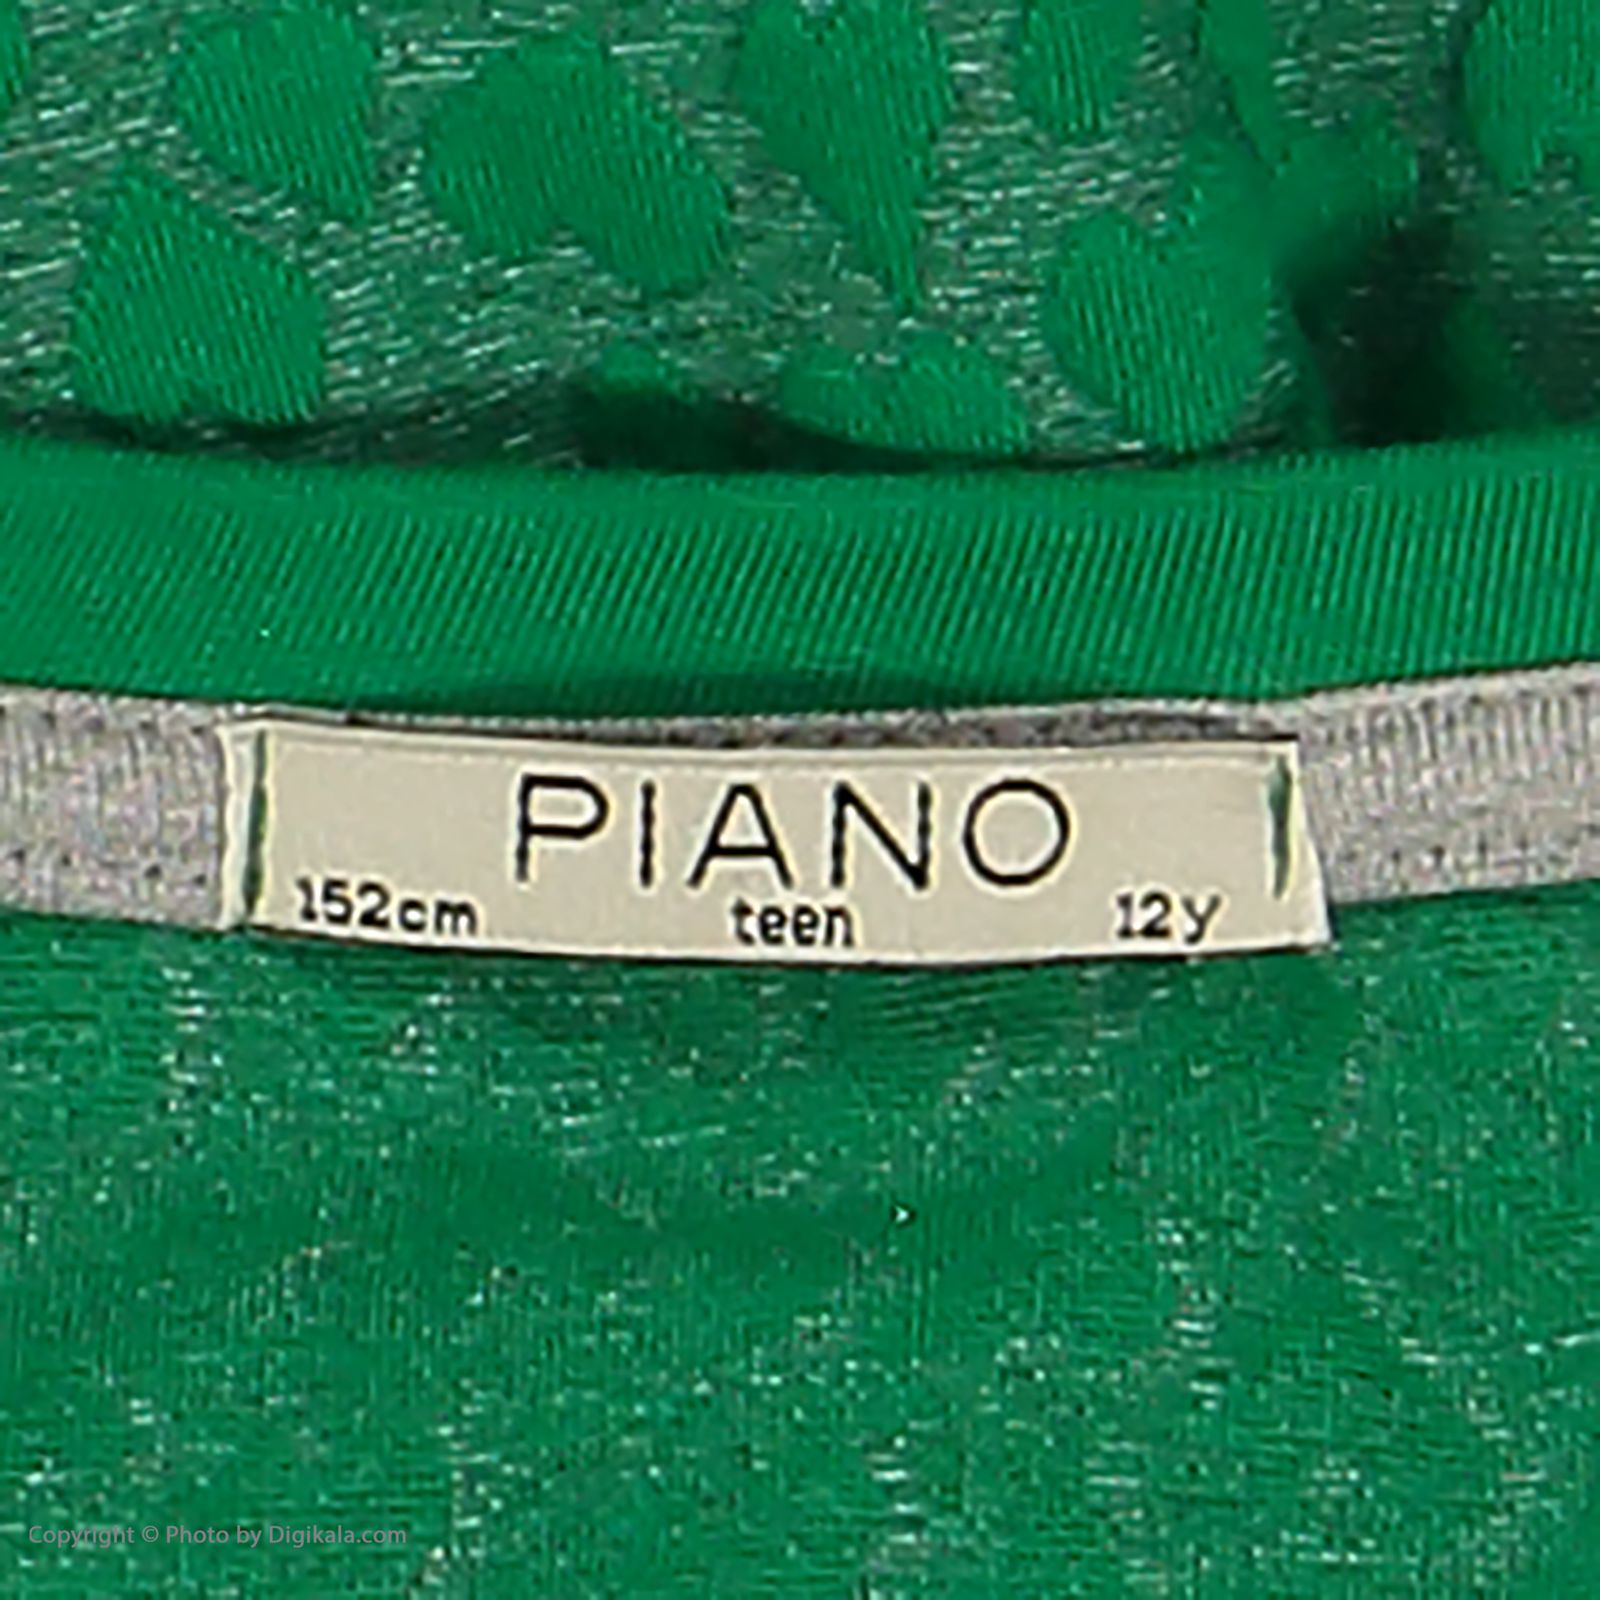 تی شرت دخترانه پیانو مدل 01816-43 -  - 4